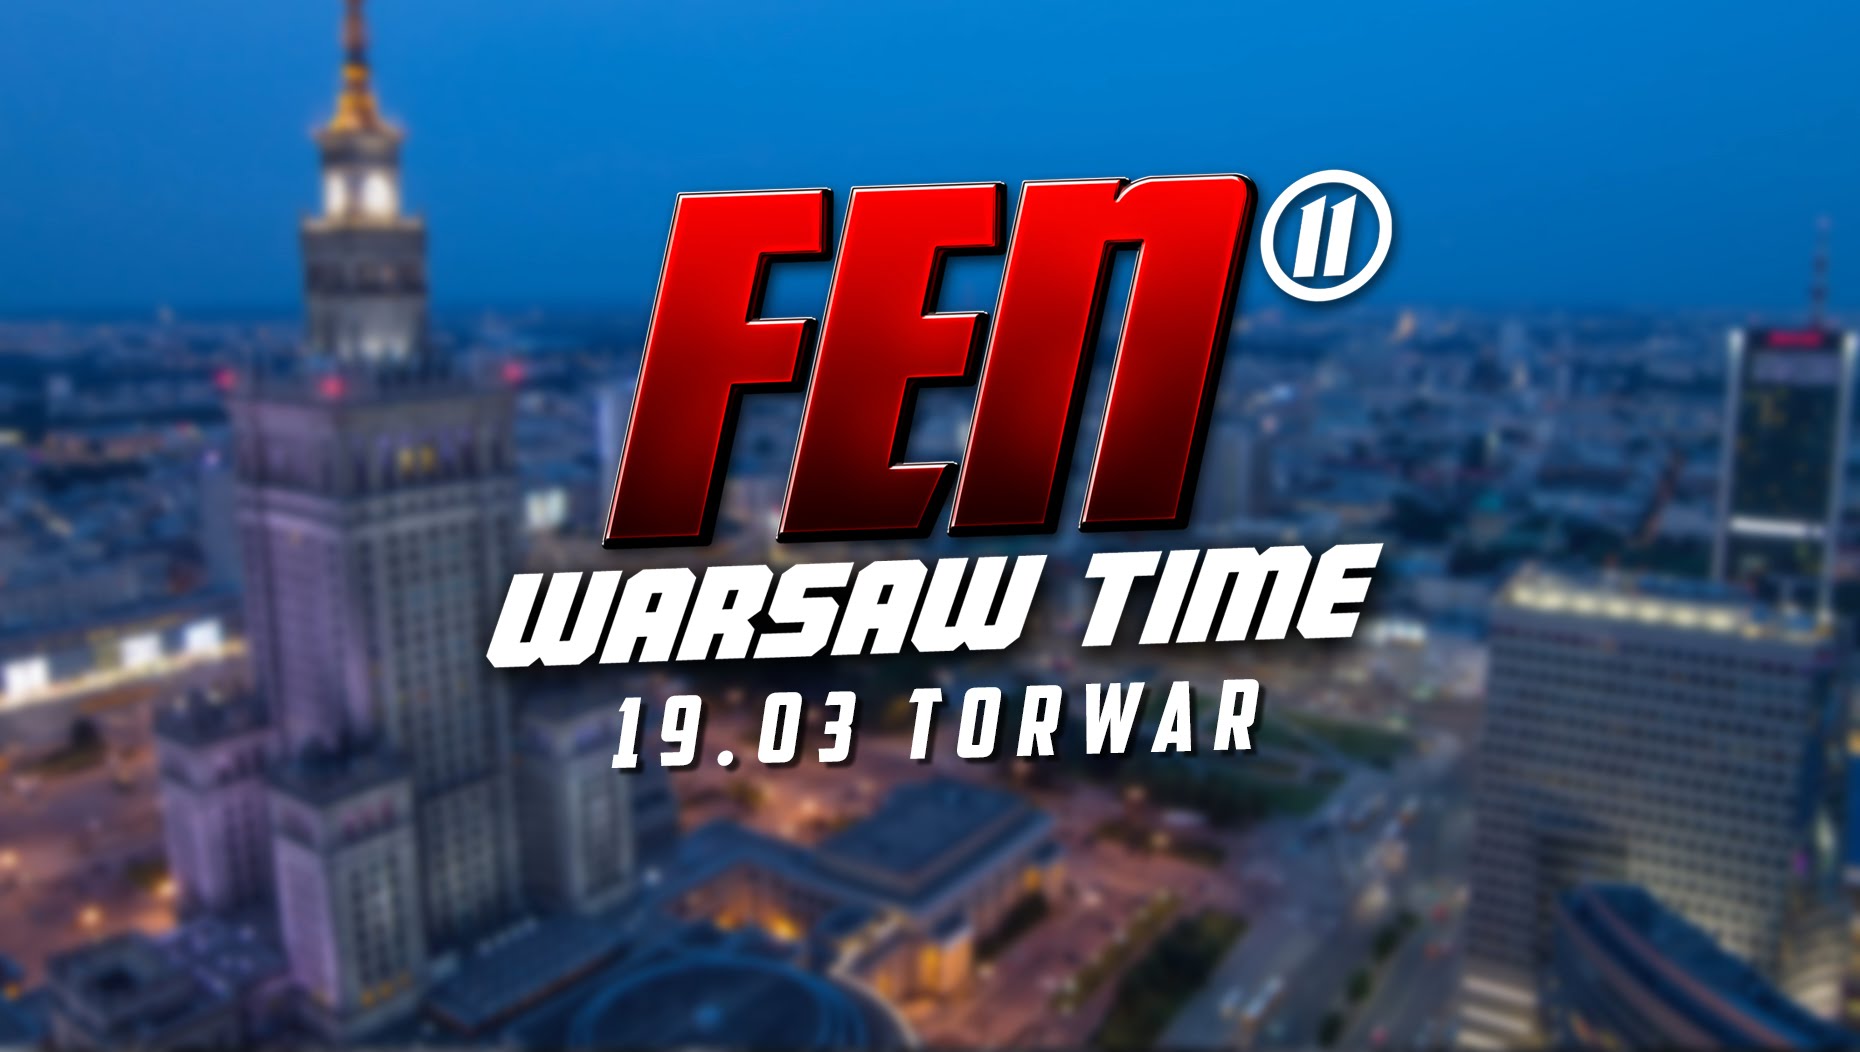 Zapowiedź gali FEN 11 Warsaw Time